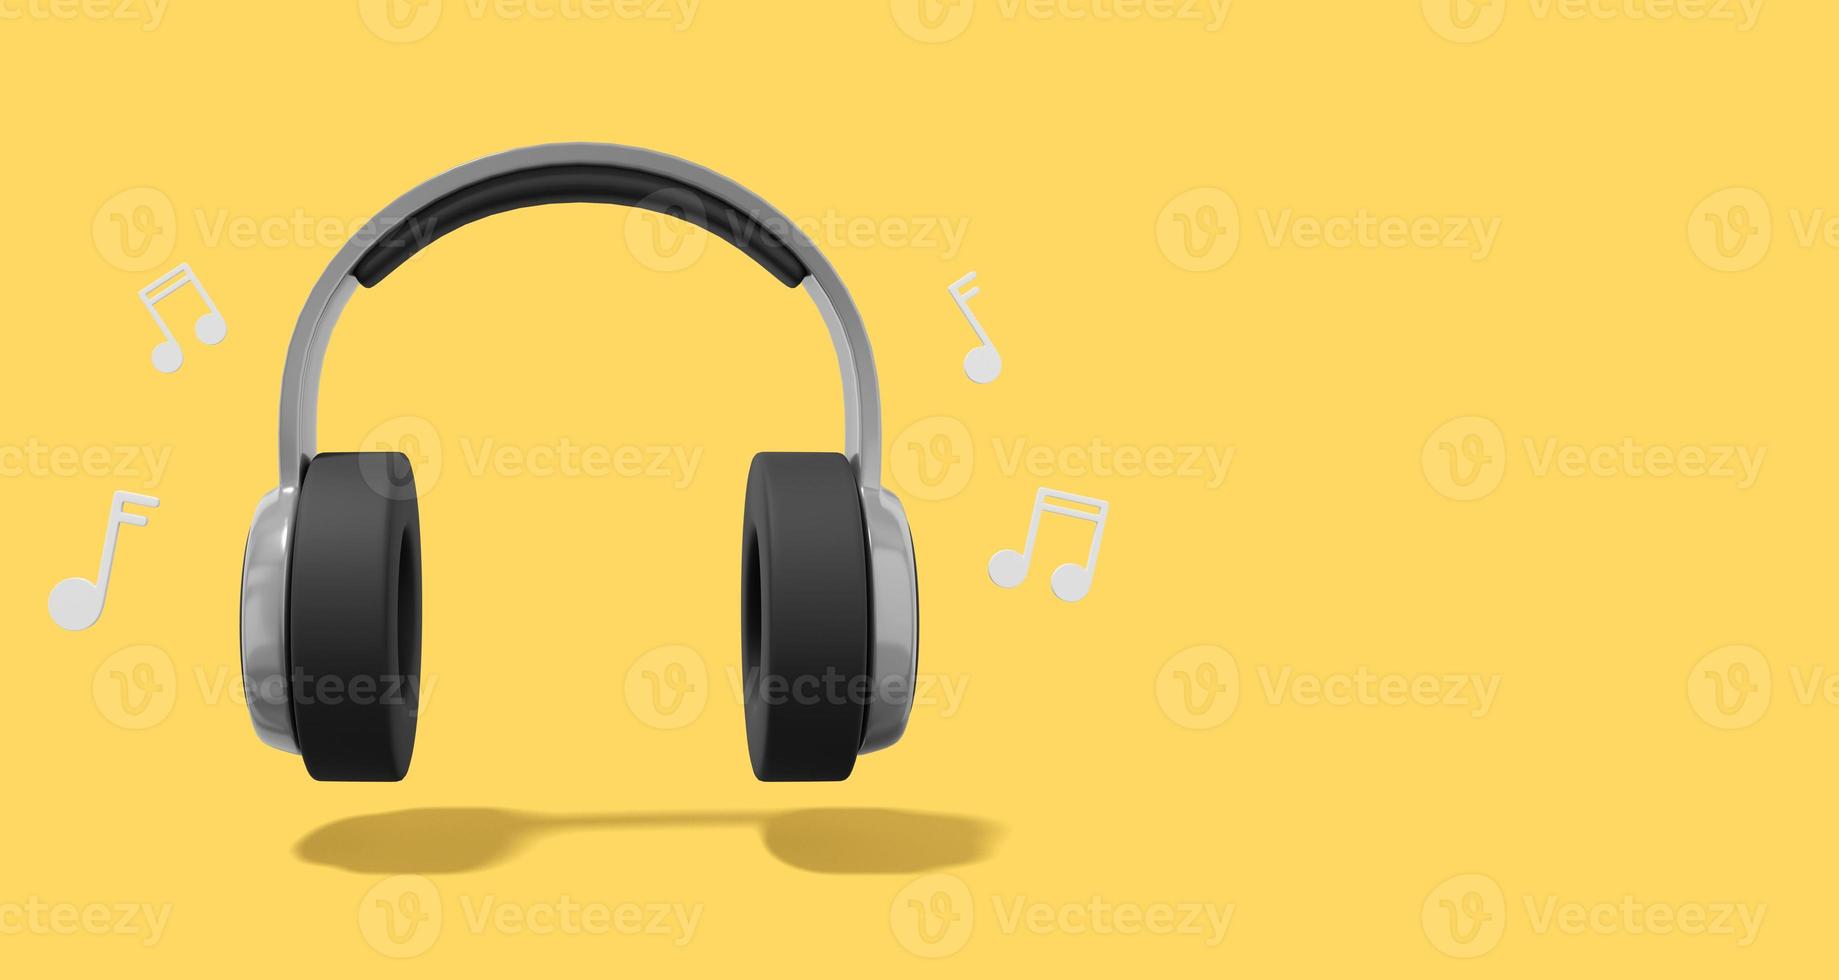 renderização 3D. fones de ouvido cinza realistas com notas musicais em fundo amarelo com espaço para texto. vista frontal. foto